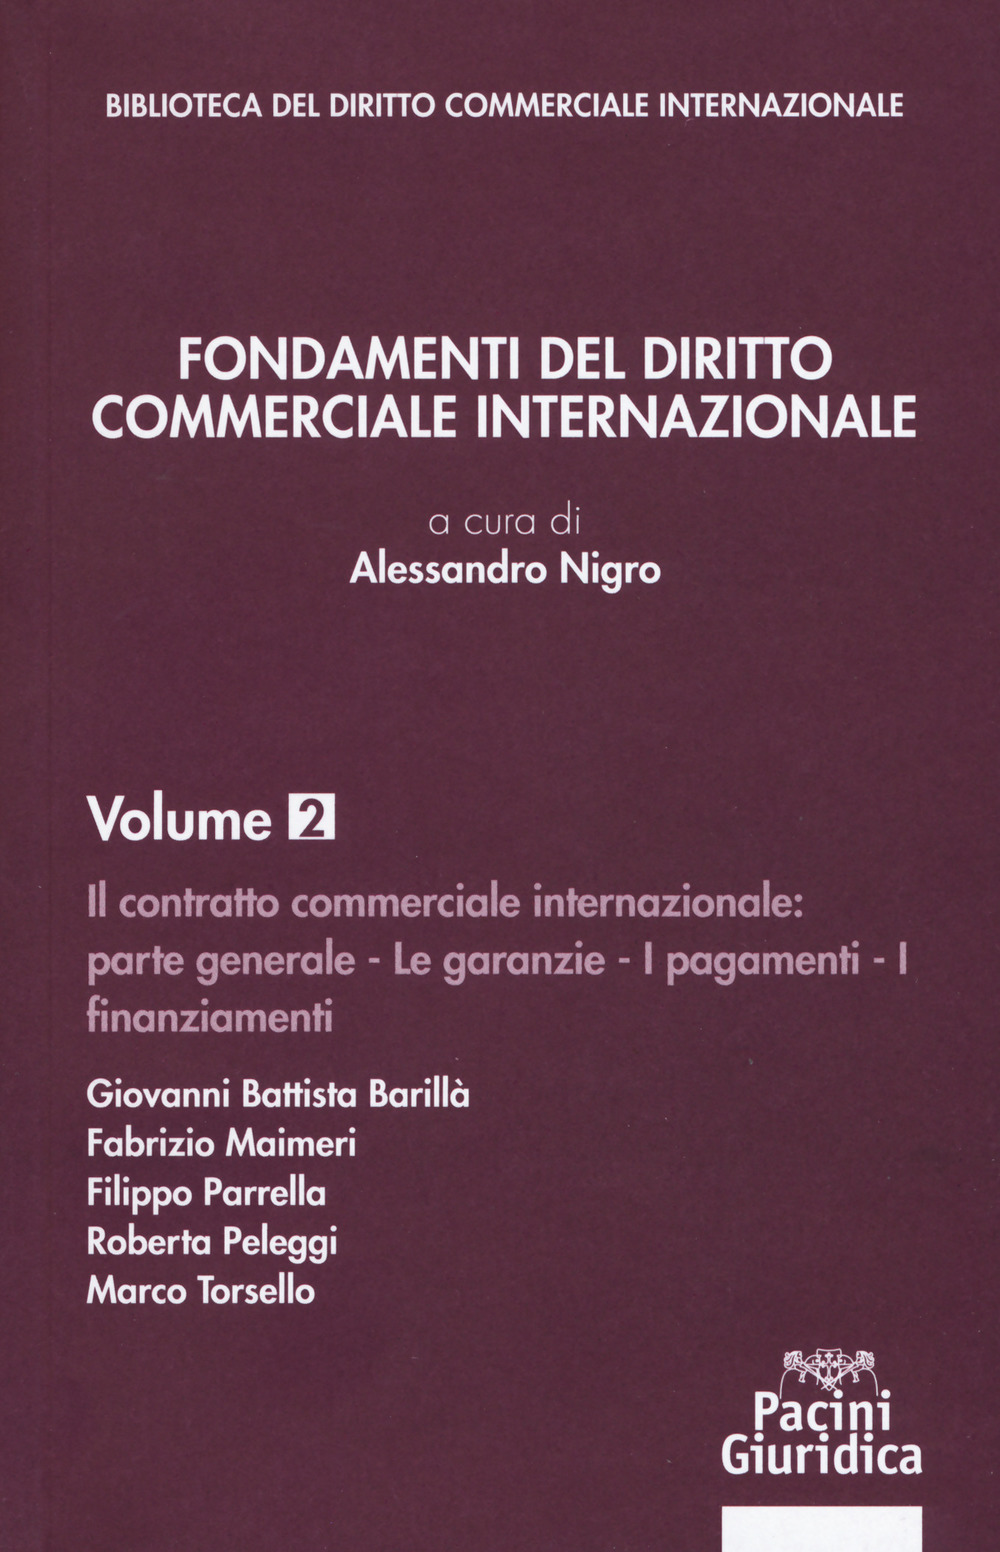 Image of Fondamenti del diritto commerciale internazionale. Vol. 2: Parte generale: le garanzie, i pagamenti, i finanziamenti.